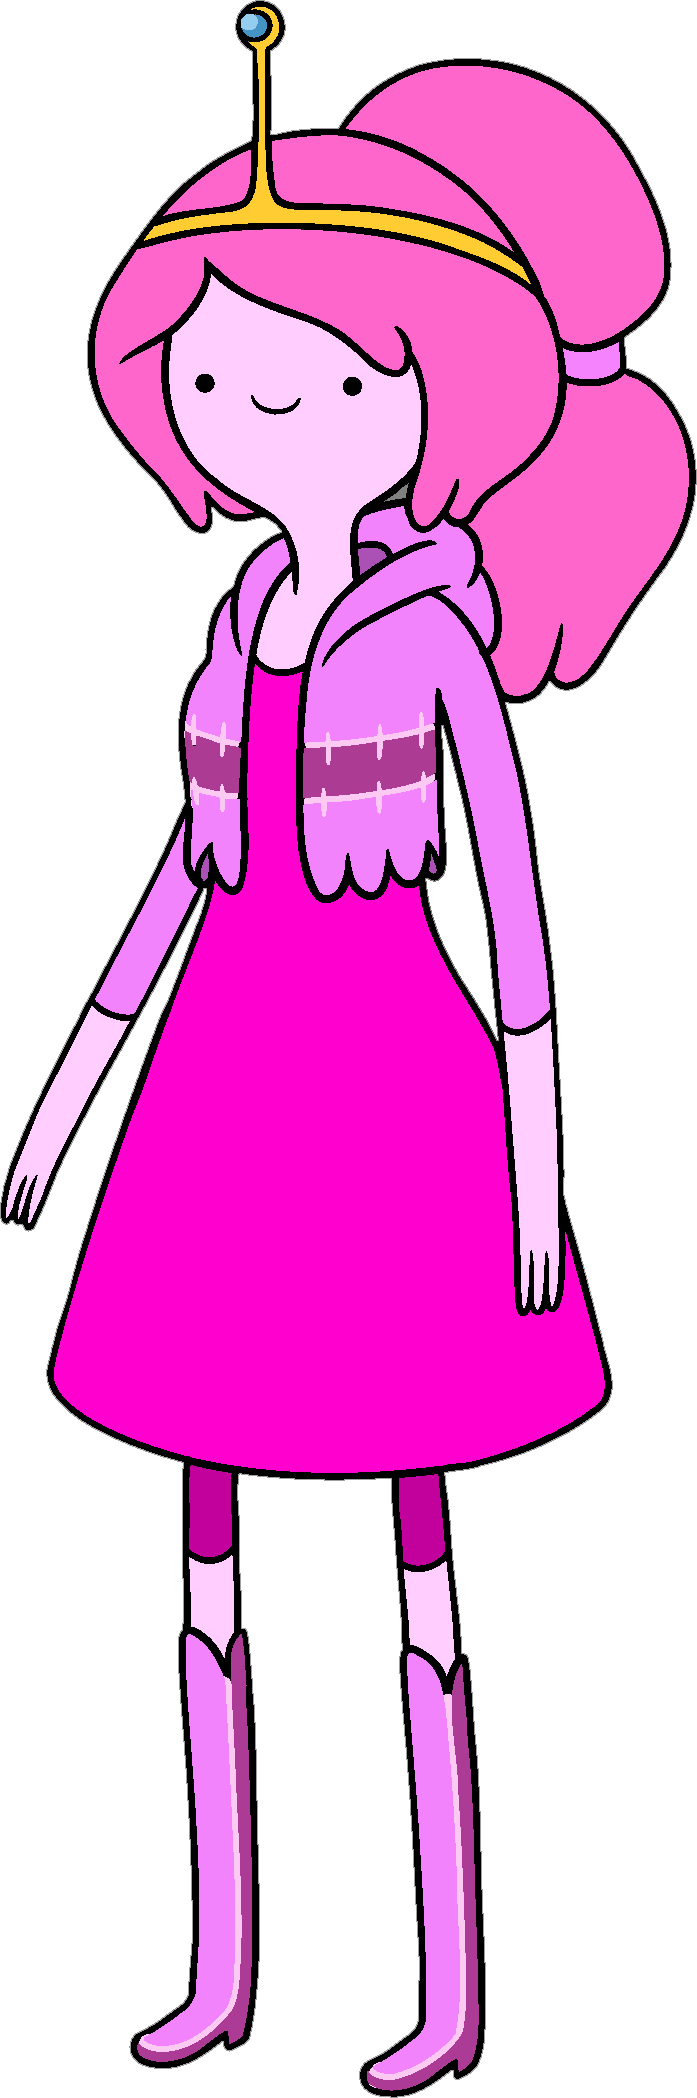 Princess Bonnibel Bubblegum - Adventure Time Princess Bubblegum (697x2098)